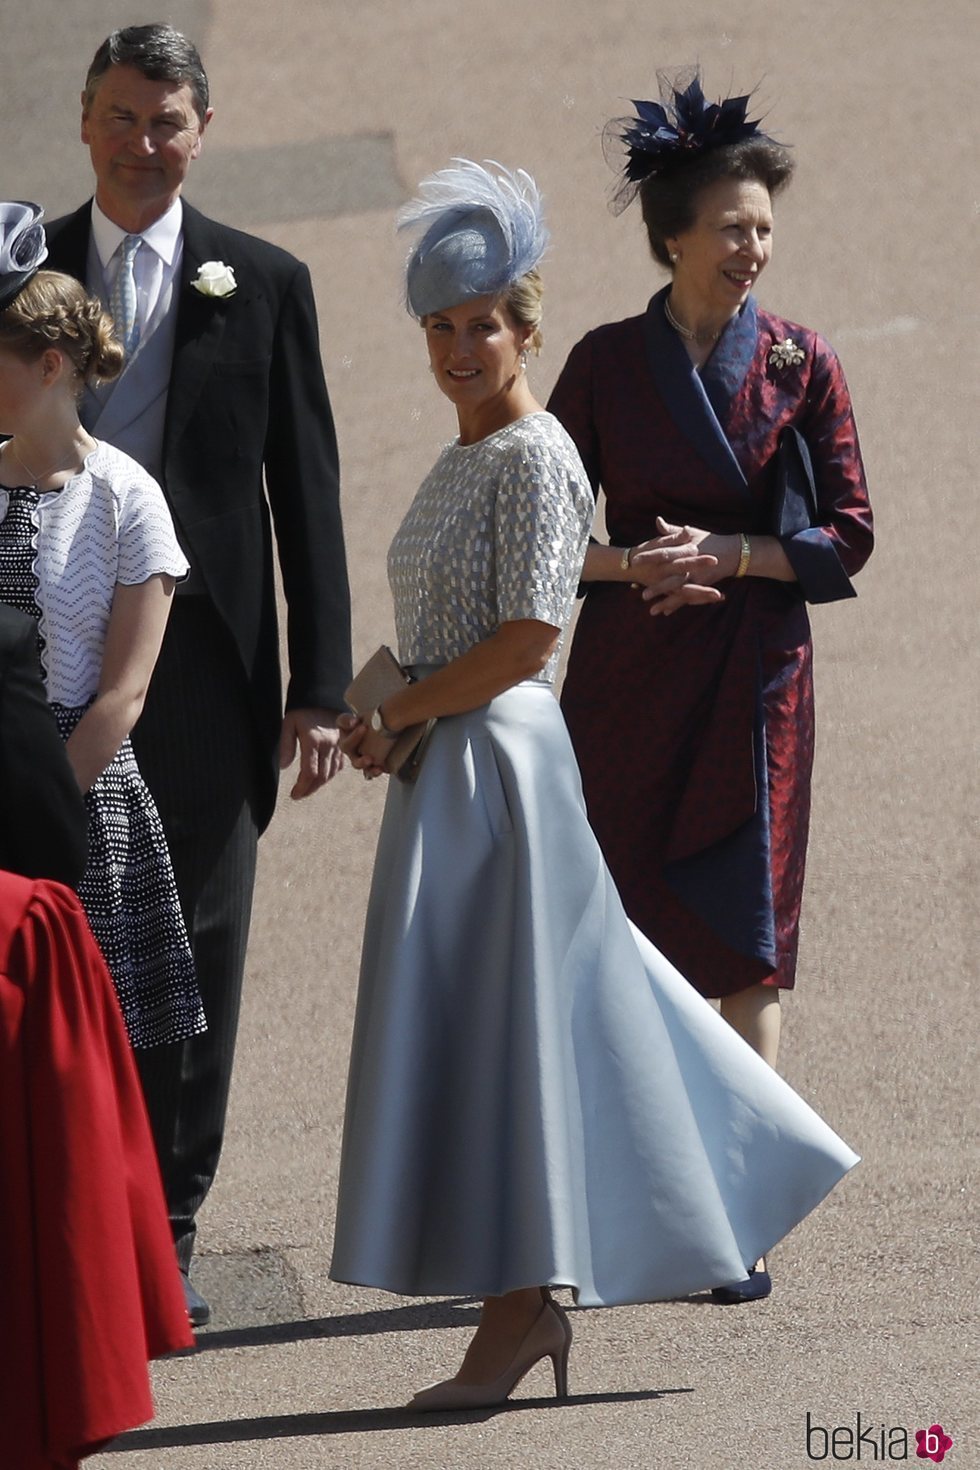 Sofia de Wessex junto a la Princesa Ana en la boda del Príncipe Harry y Meghan Markle